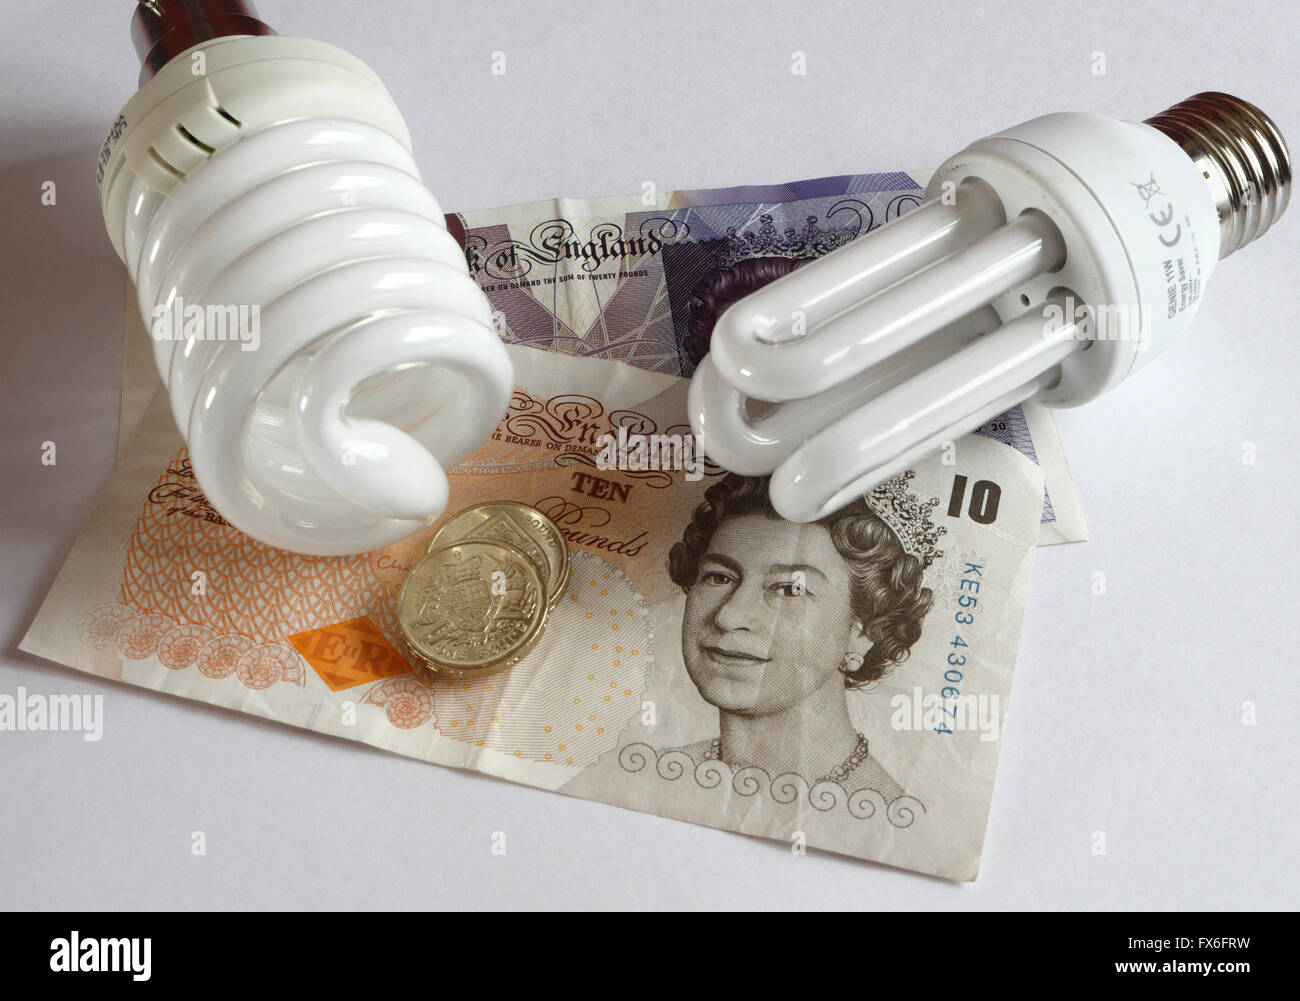 Ampoule à économie d'énergie, avec billets de banque, efficacité énergétique, faibles émissions de carbone Banque D'Images